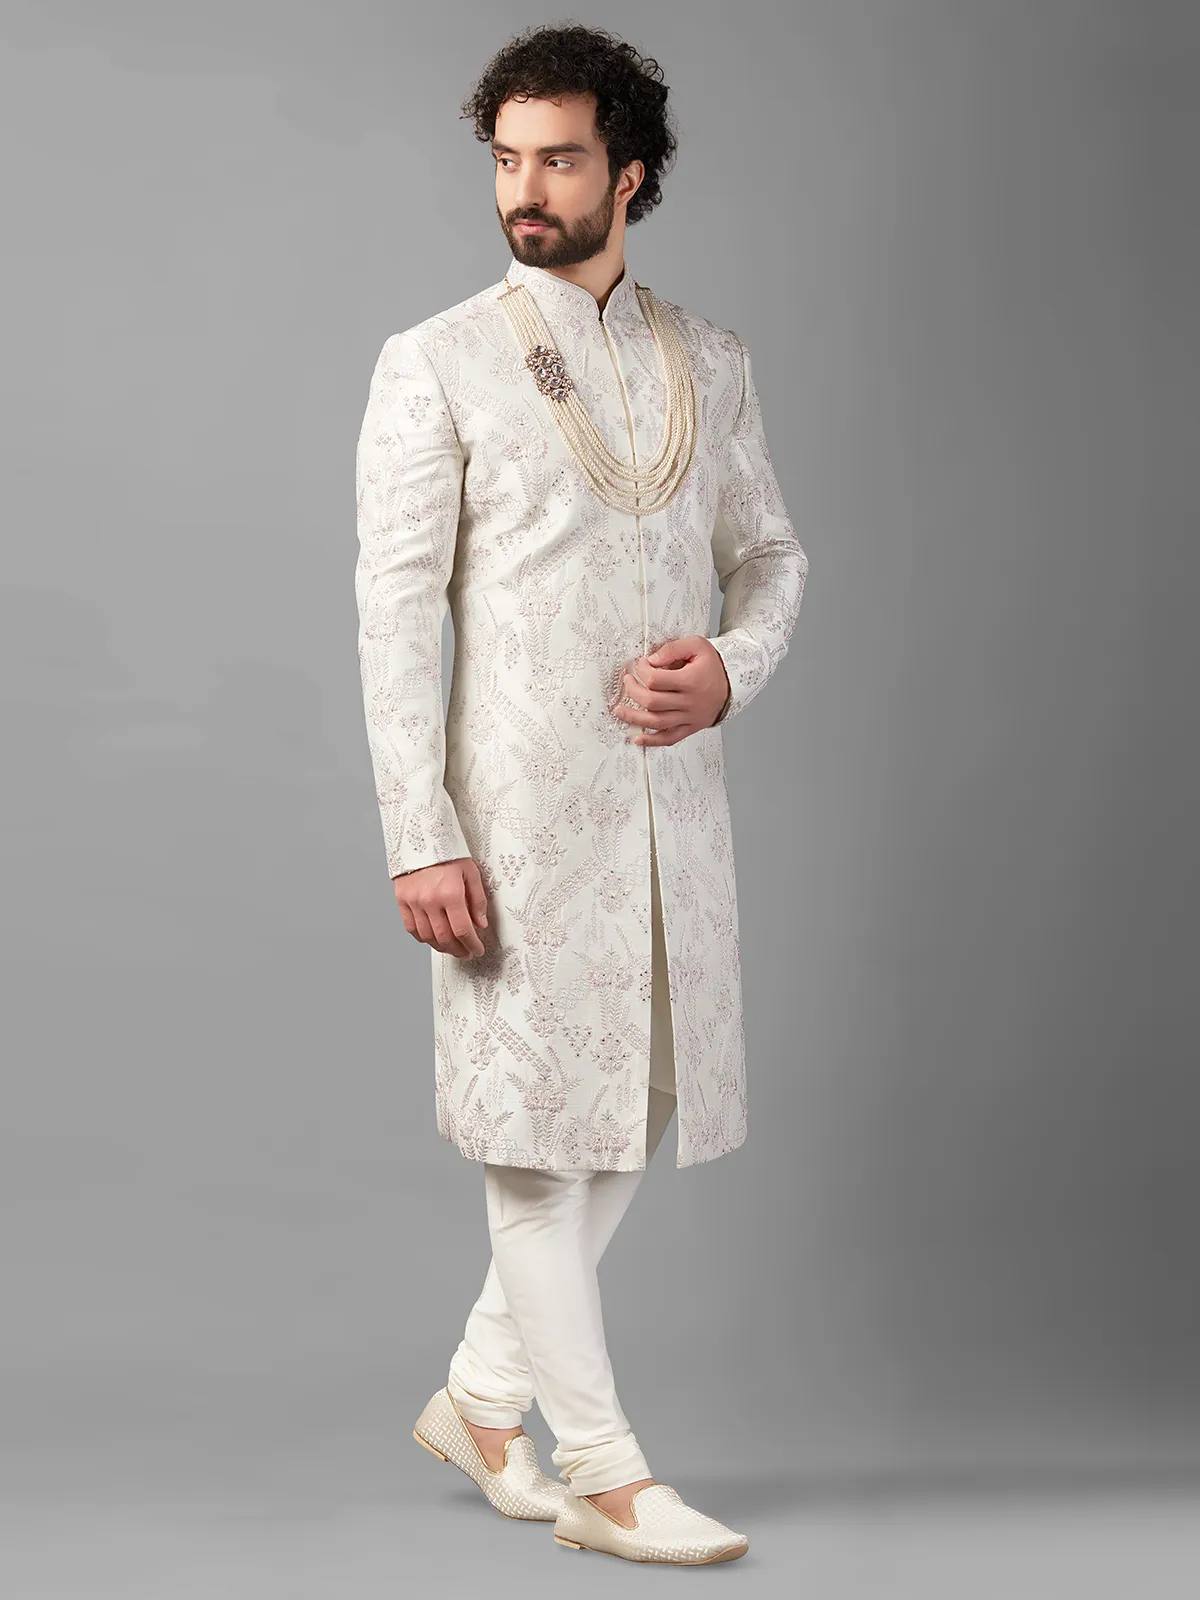 White raw silk embellished sherwani